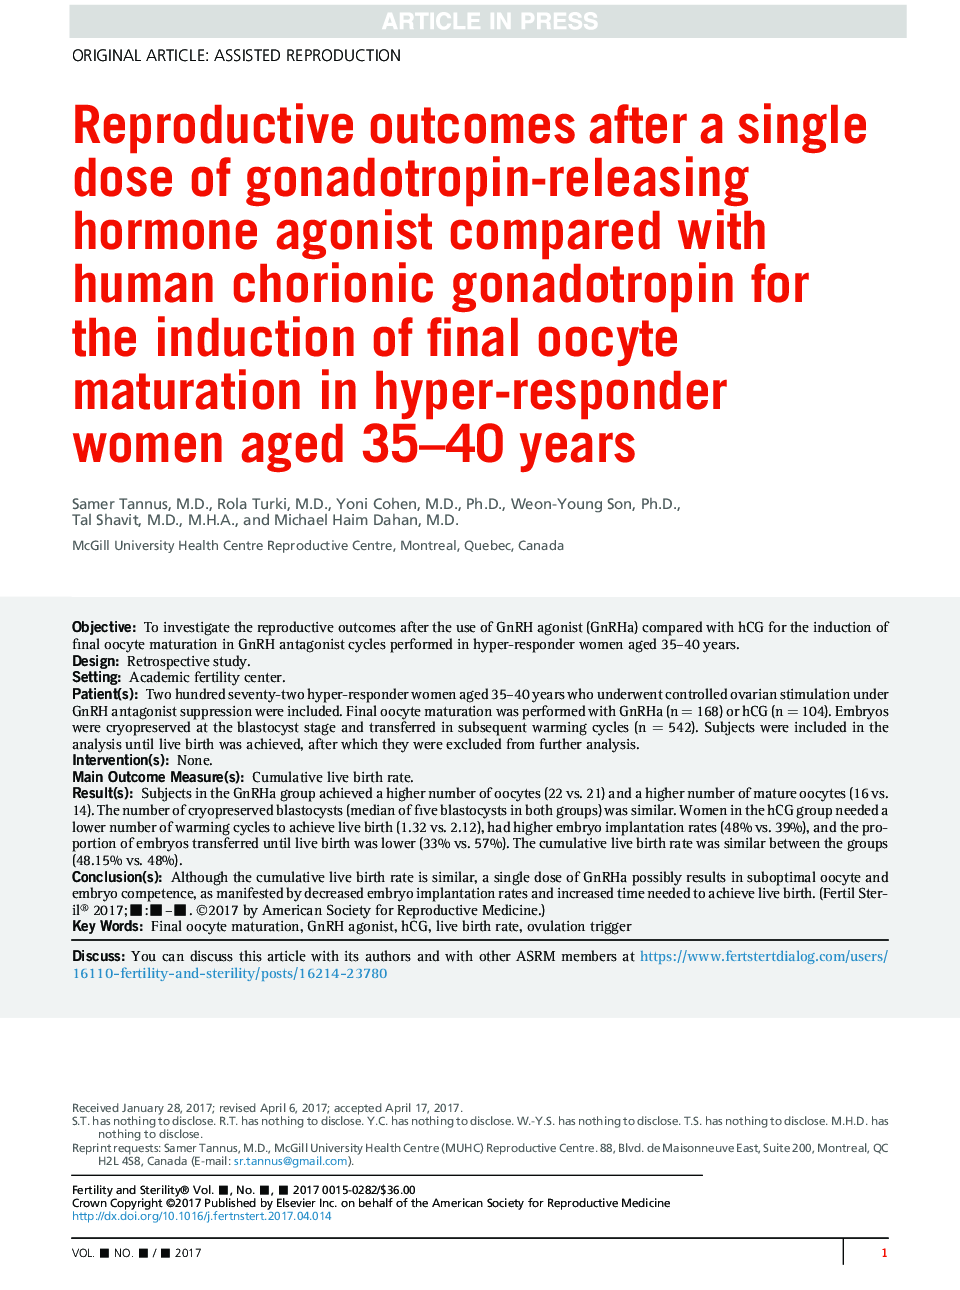 نتایج باروری پس از یک بار مصرف آگونیست هورمون آزاد کننده گنادوتروپین در مقایسه با گونادوتروپین کوریون انسانی برای القاء بلوغ تخمک نهایی در زنان بالای 35-40 ساله 